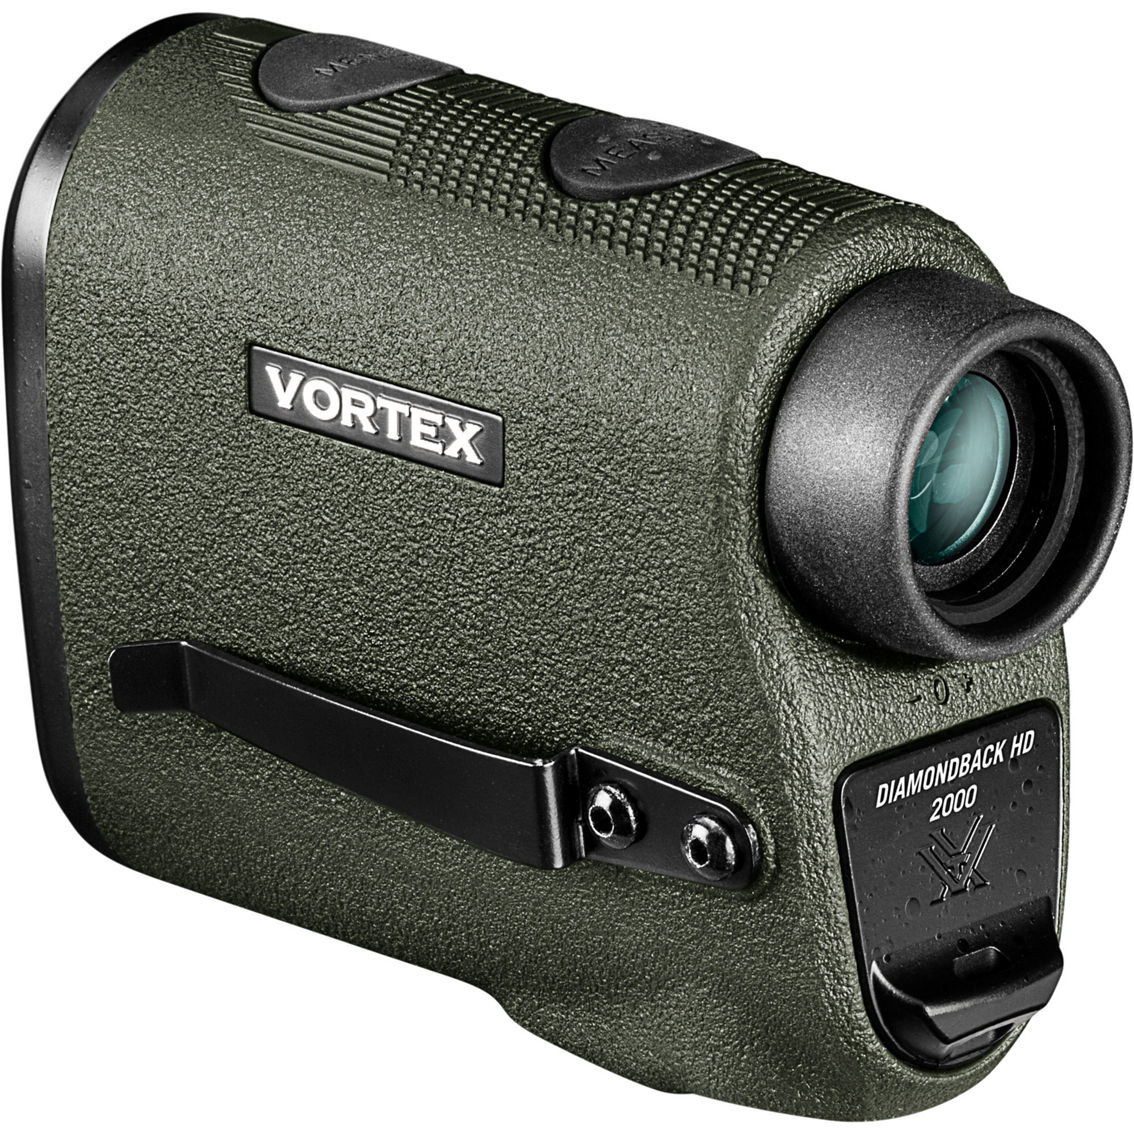 Vortex Diamondback HD 2000 Laser Range Finder